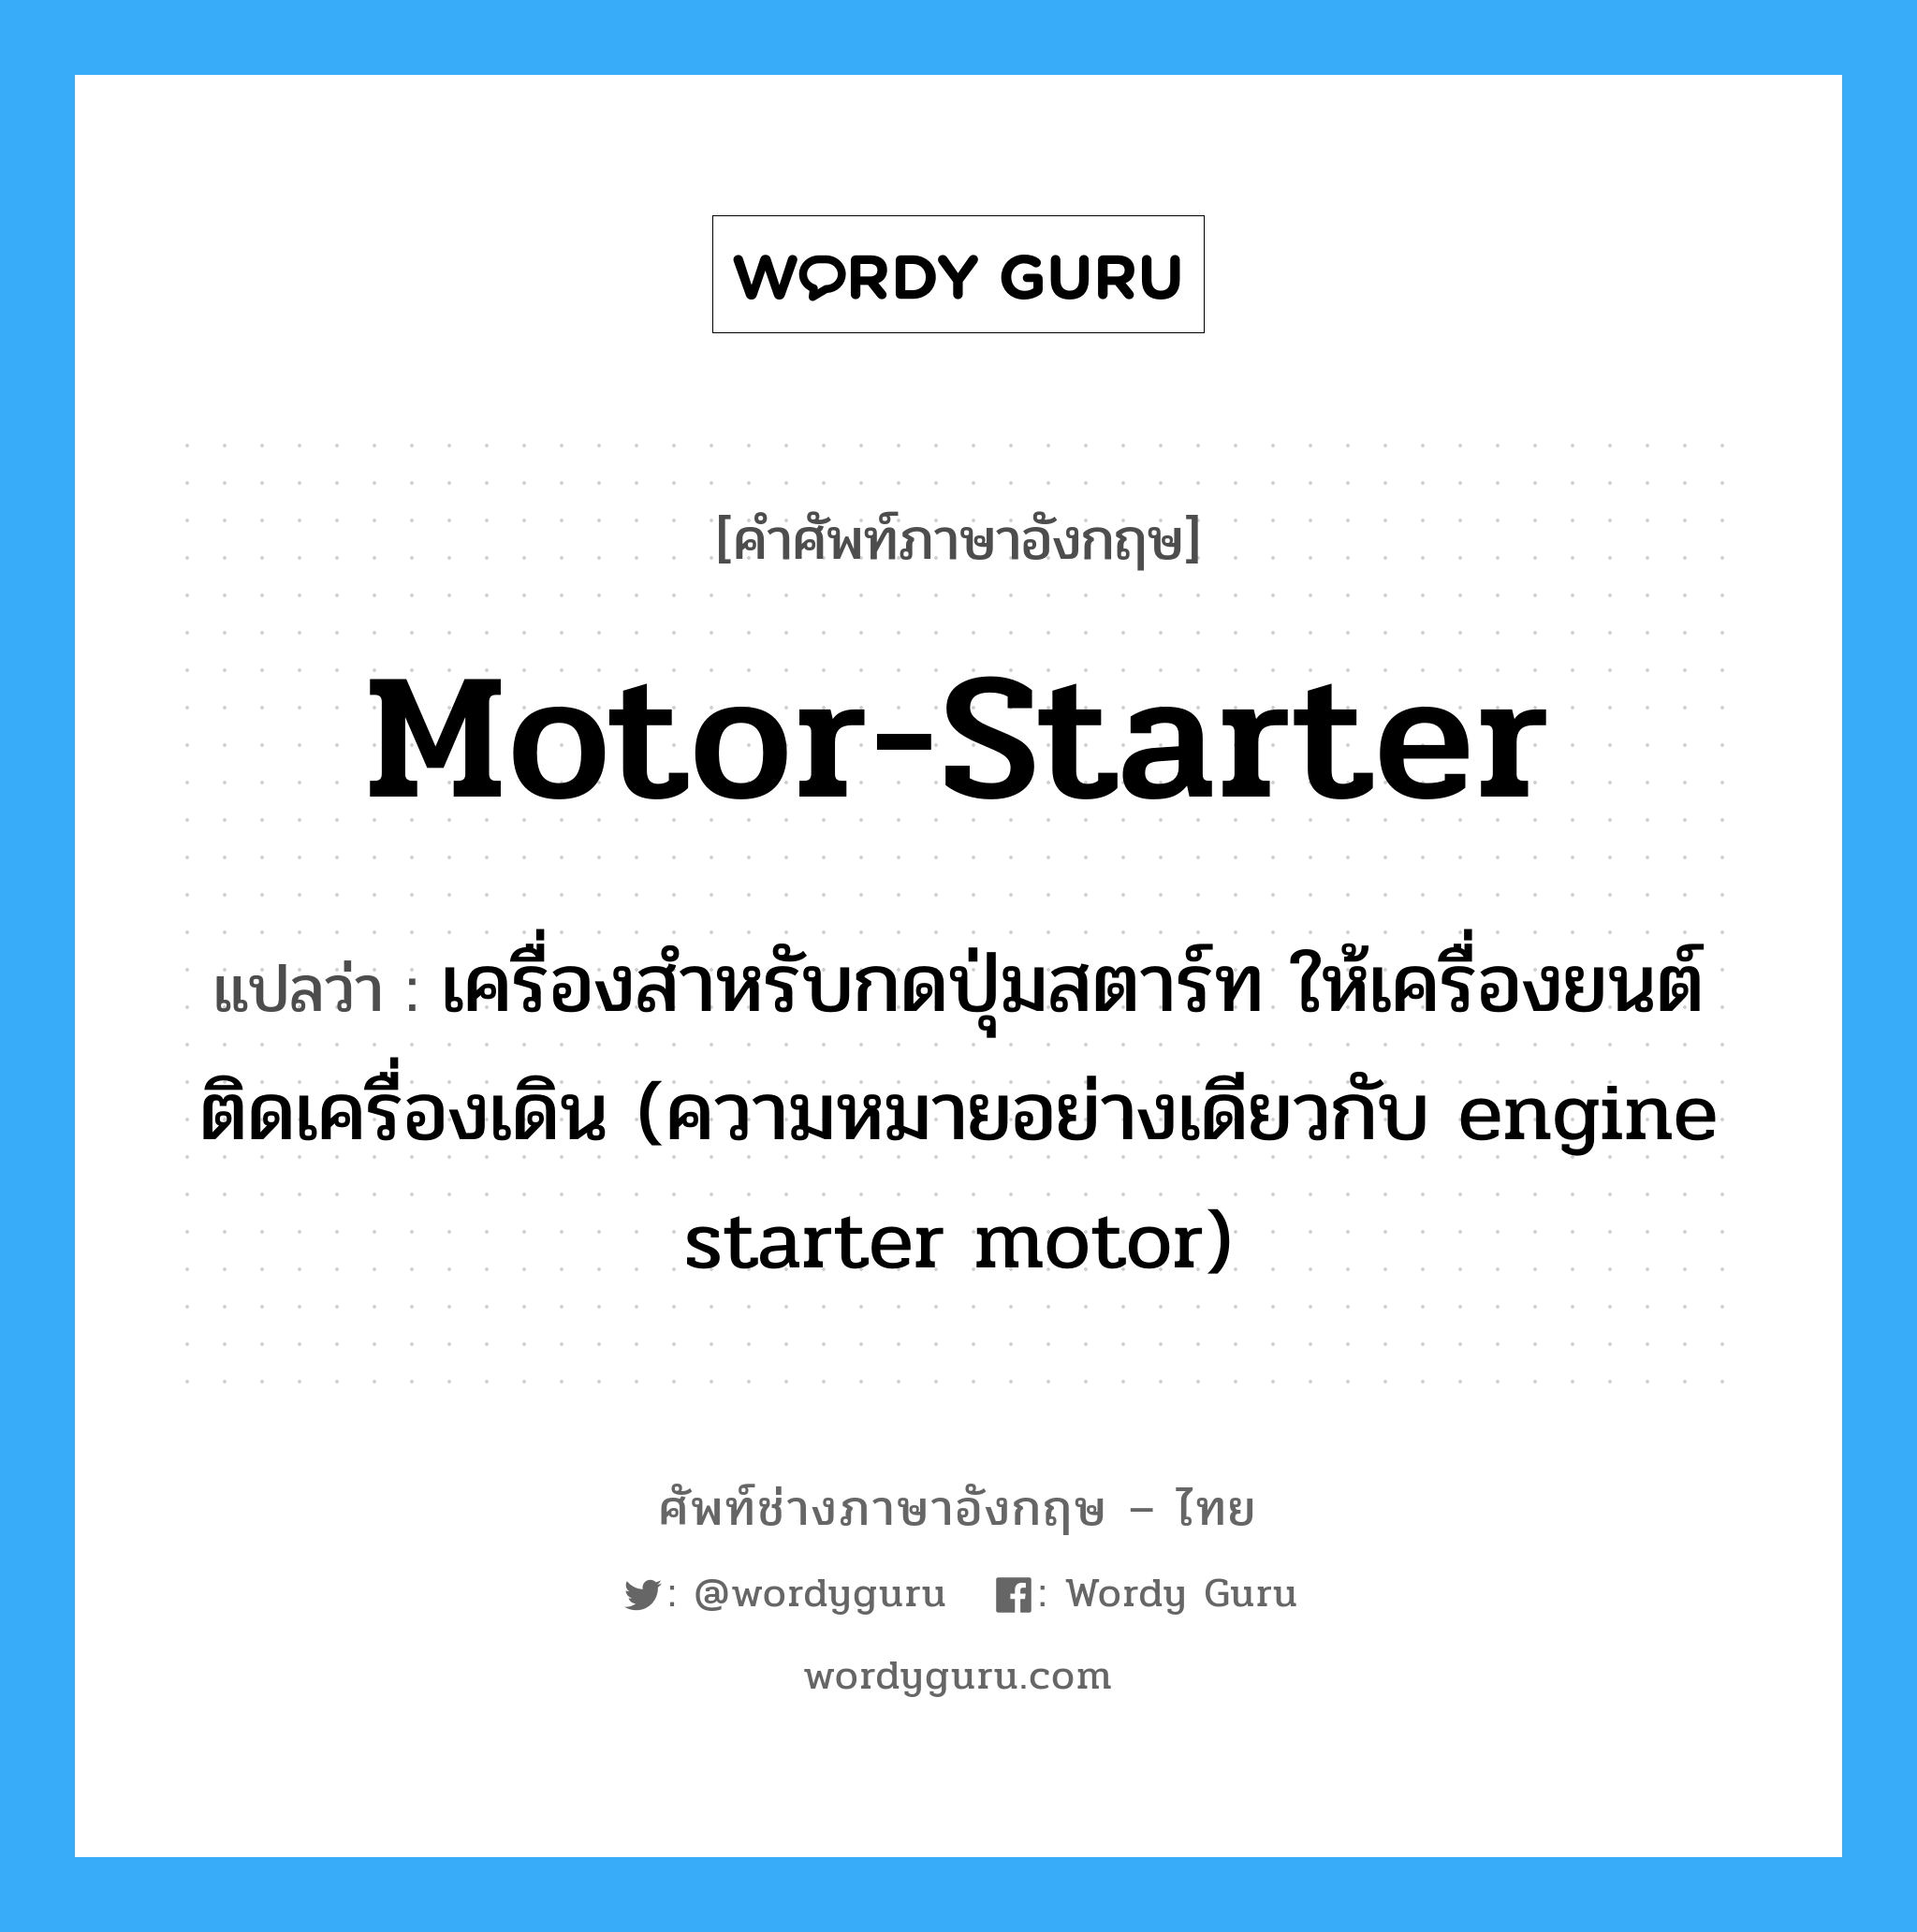 motor-starter แปลว่า?, คำศัพท์ช่างภาษาอังกฤษ - ไทย motor-starter คำศัพท์ภาษาอังกฤษ motor-starter แปลว่า เครื่องสำหรับกดปุ่มสตาร์ท ให้เครื่องยนต์ติดเครื่องเดิน (ความหมายอย่างเดียวกับ engine starter motor)